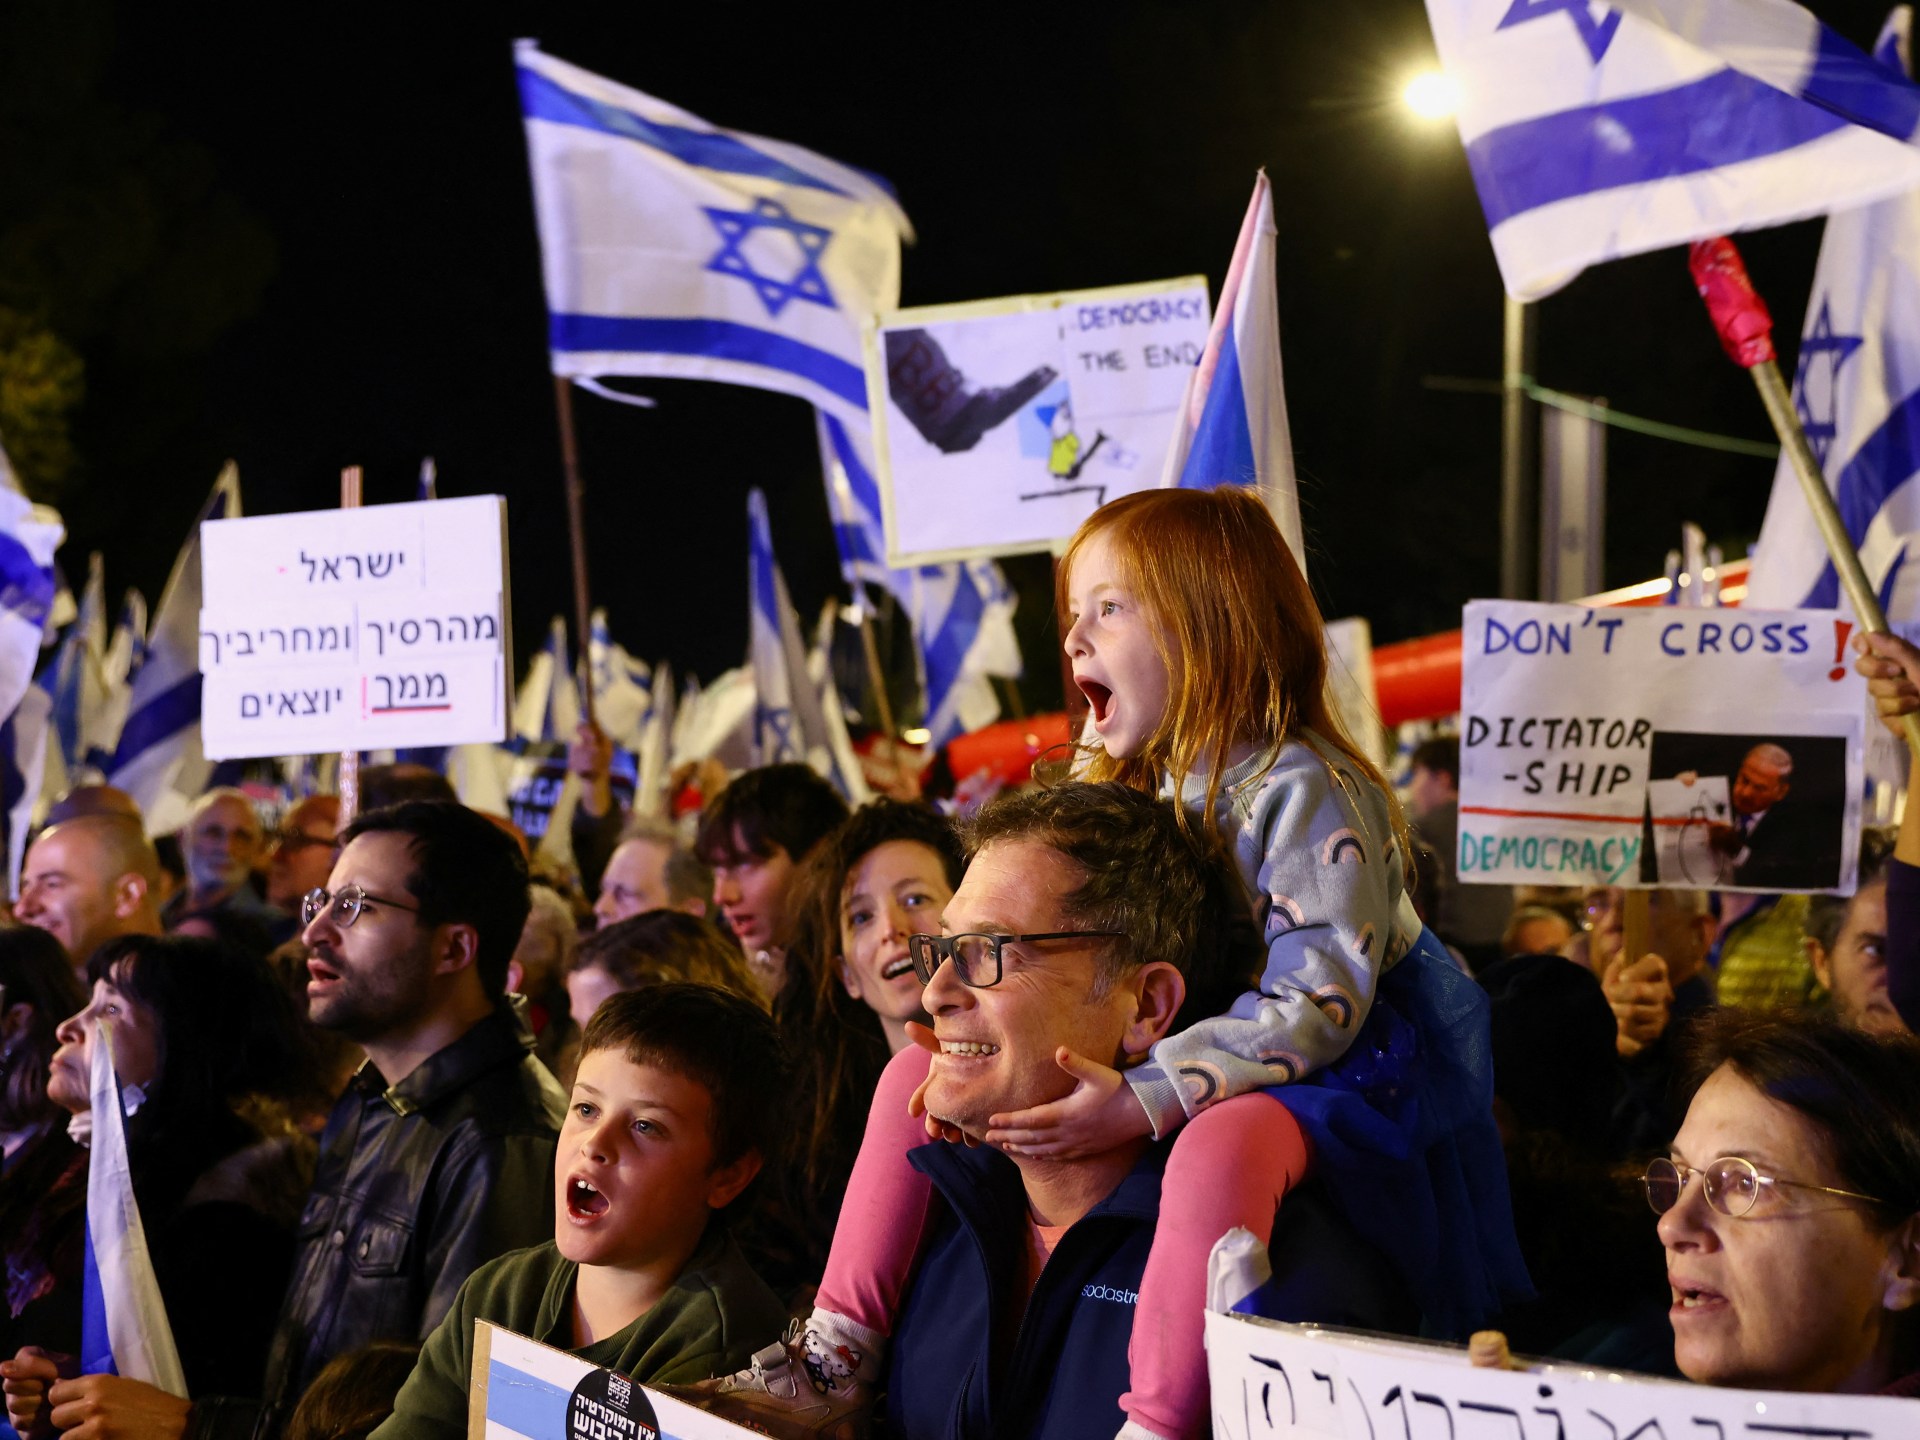 Desátý týden demonstrují obrovské davy proti změnám izraelského soudnictví |  Protestní zprávy